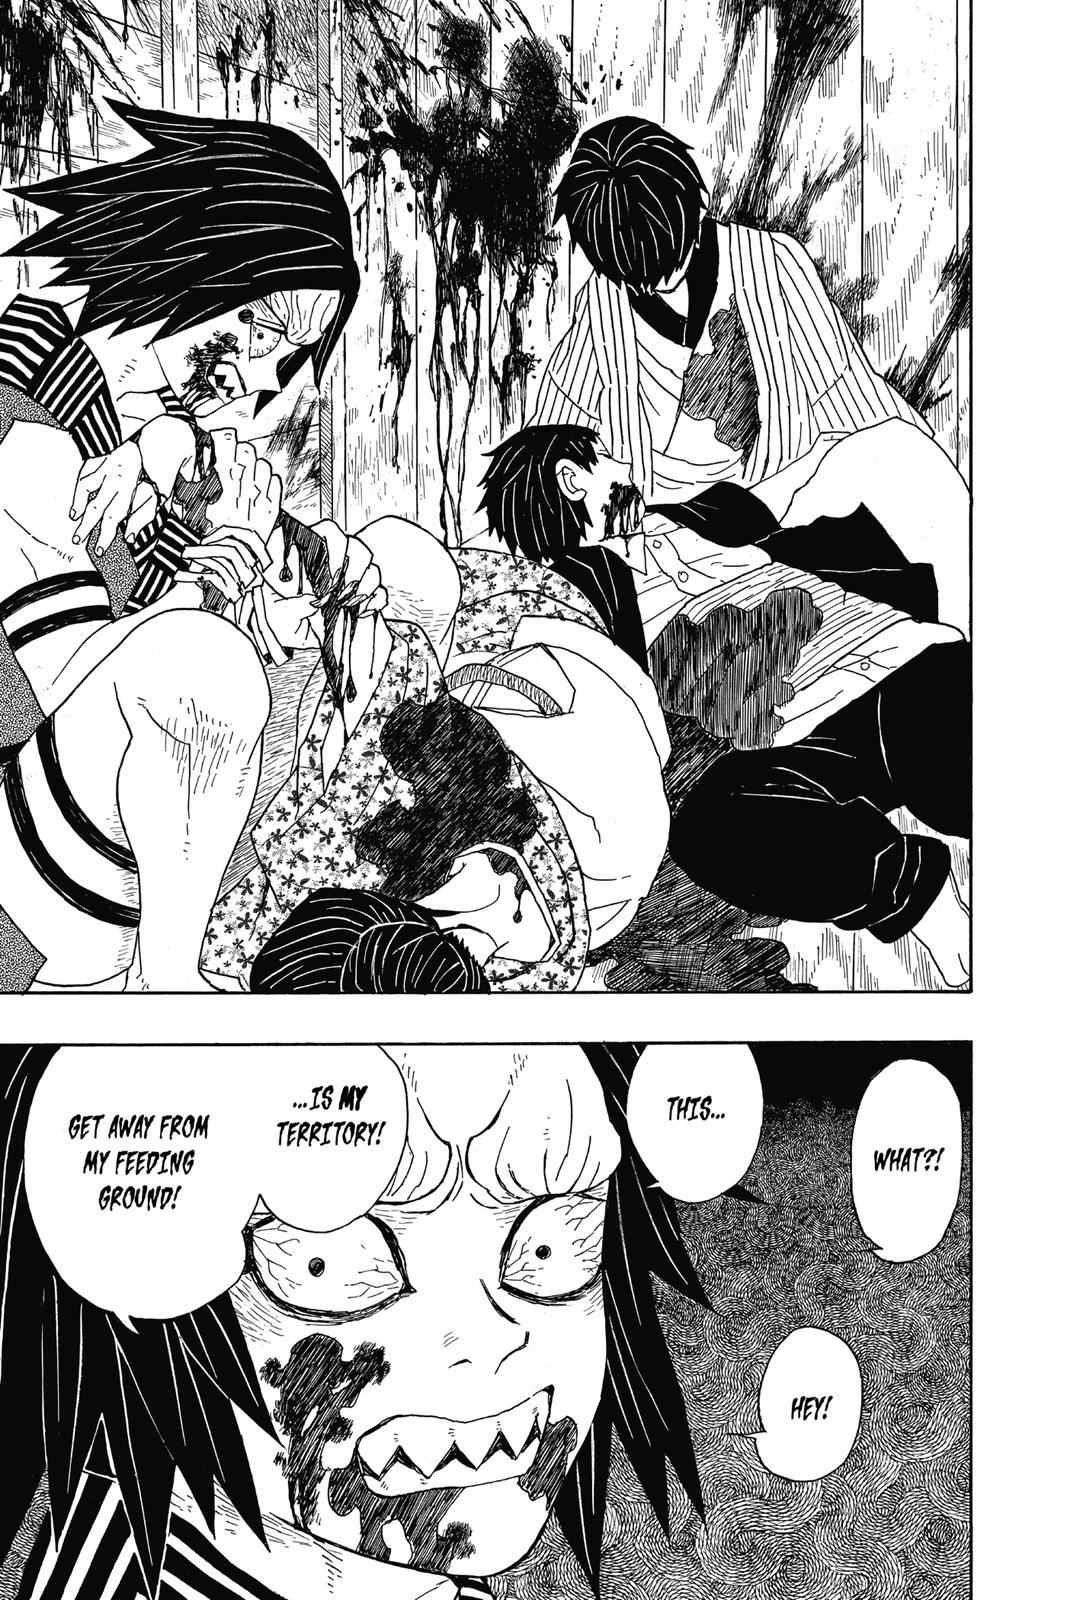 Demon Slayer Manga Manga Chapter - 2 - image 8